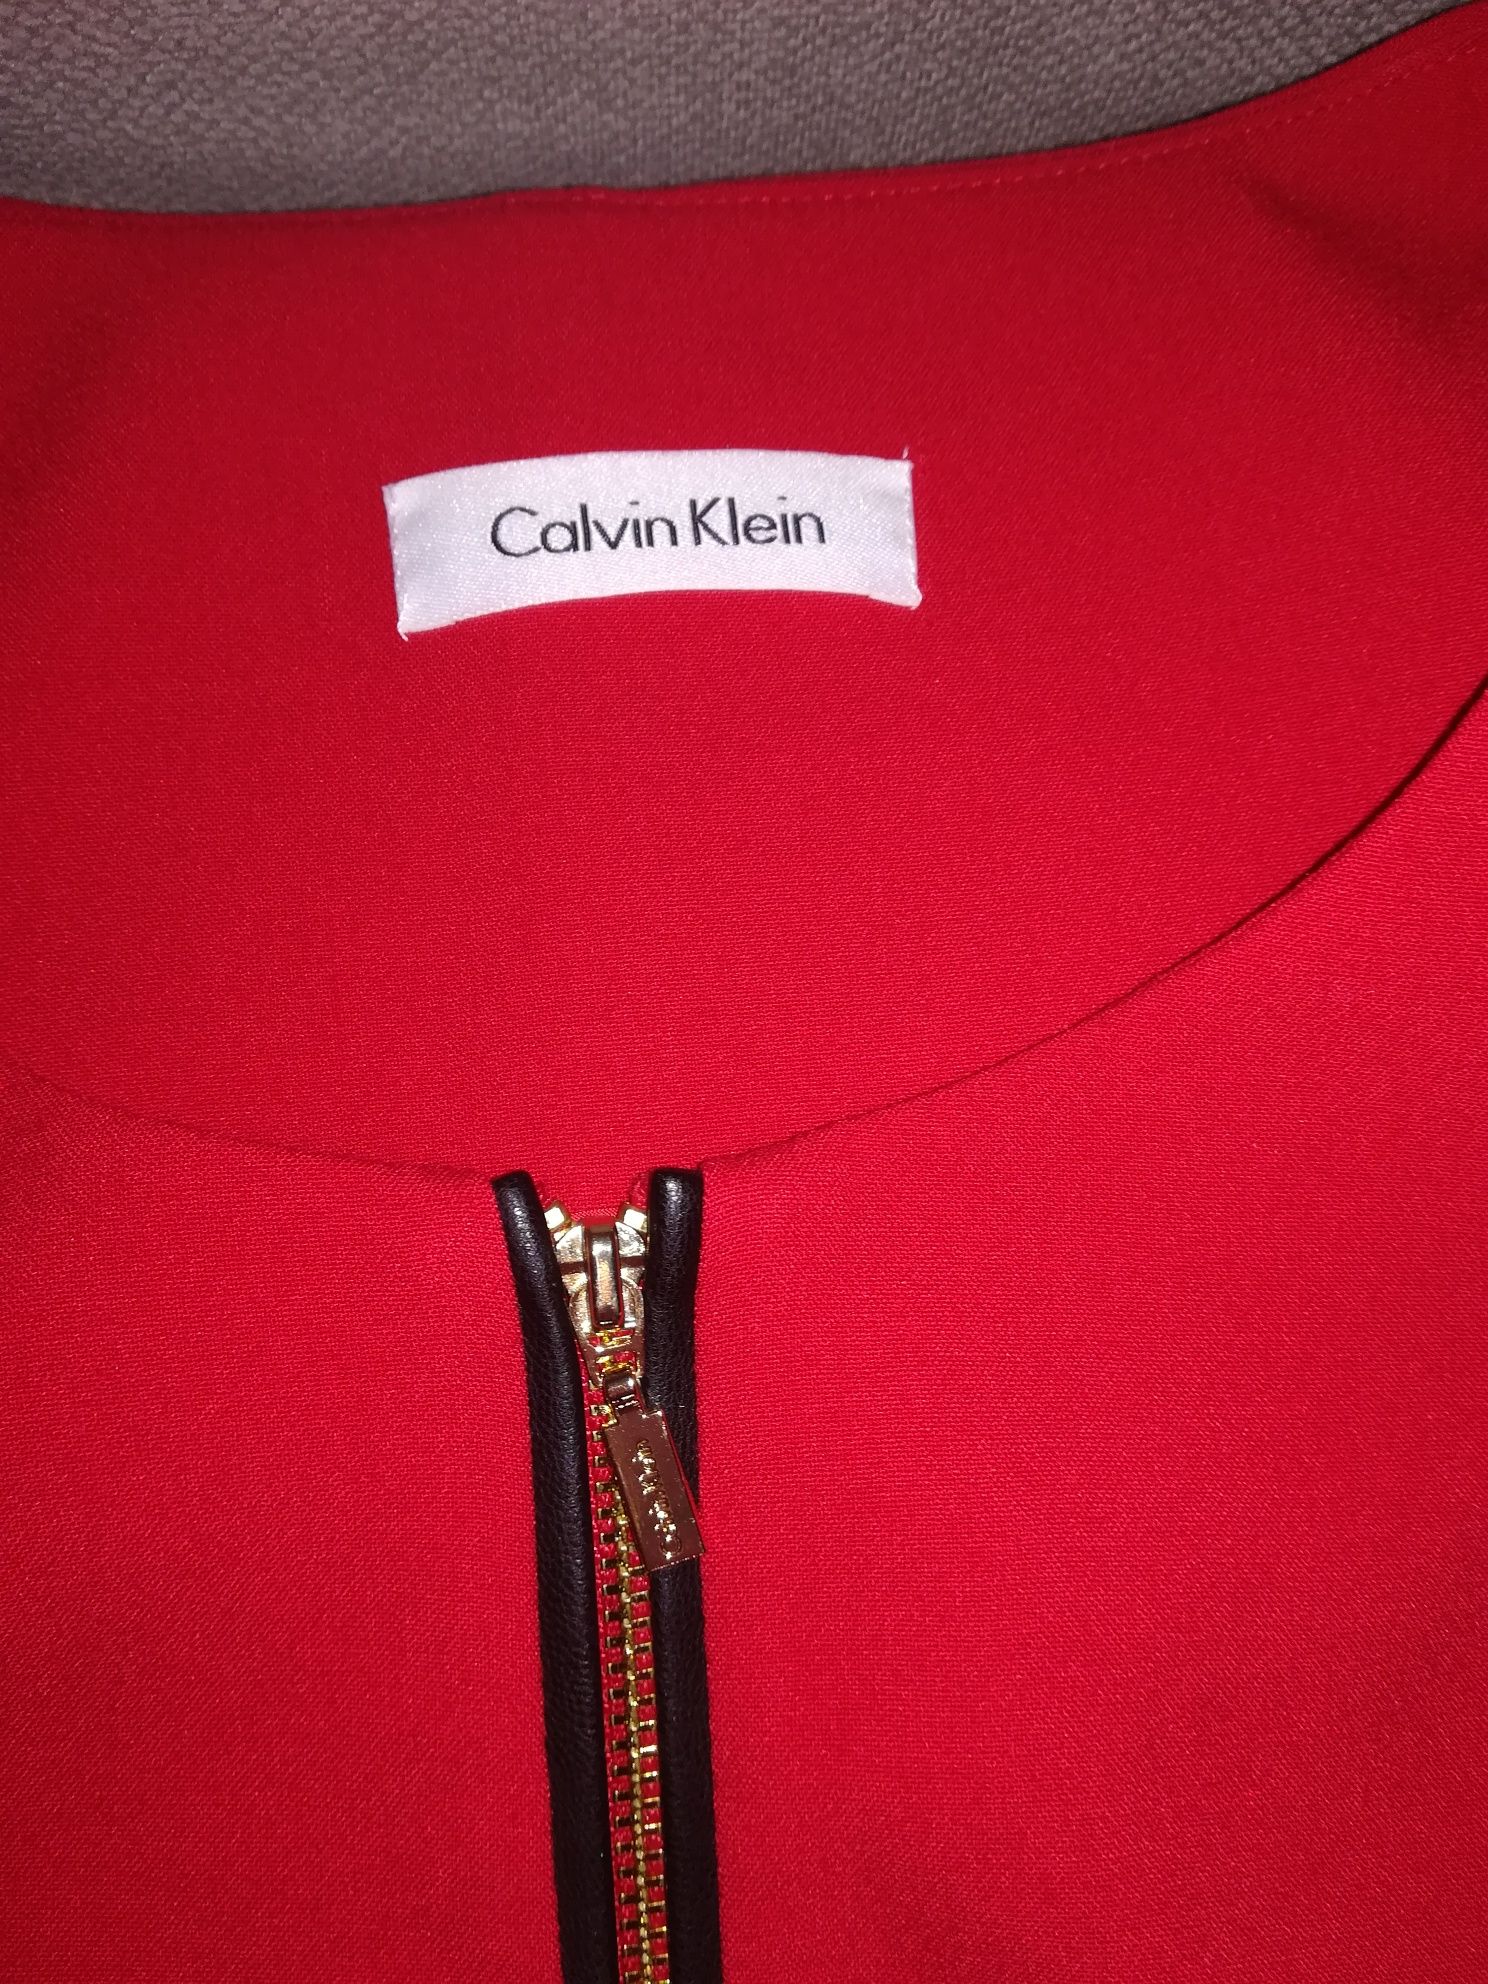 Calvin Klein, żakiet rozm. M